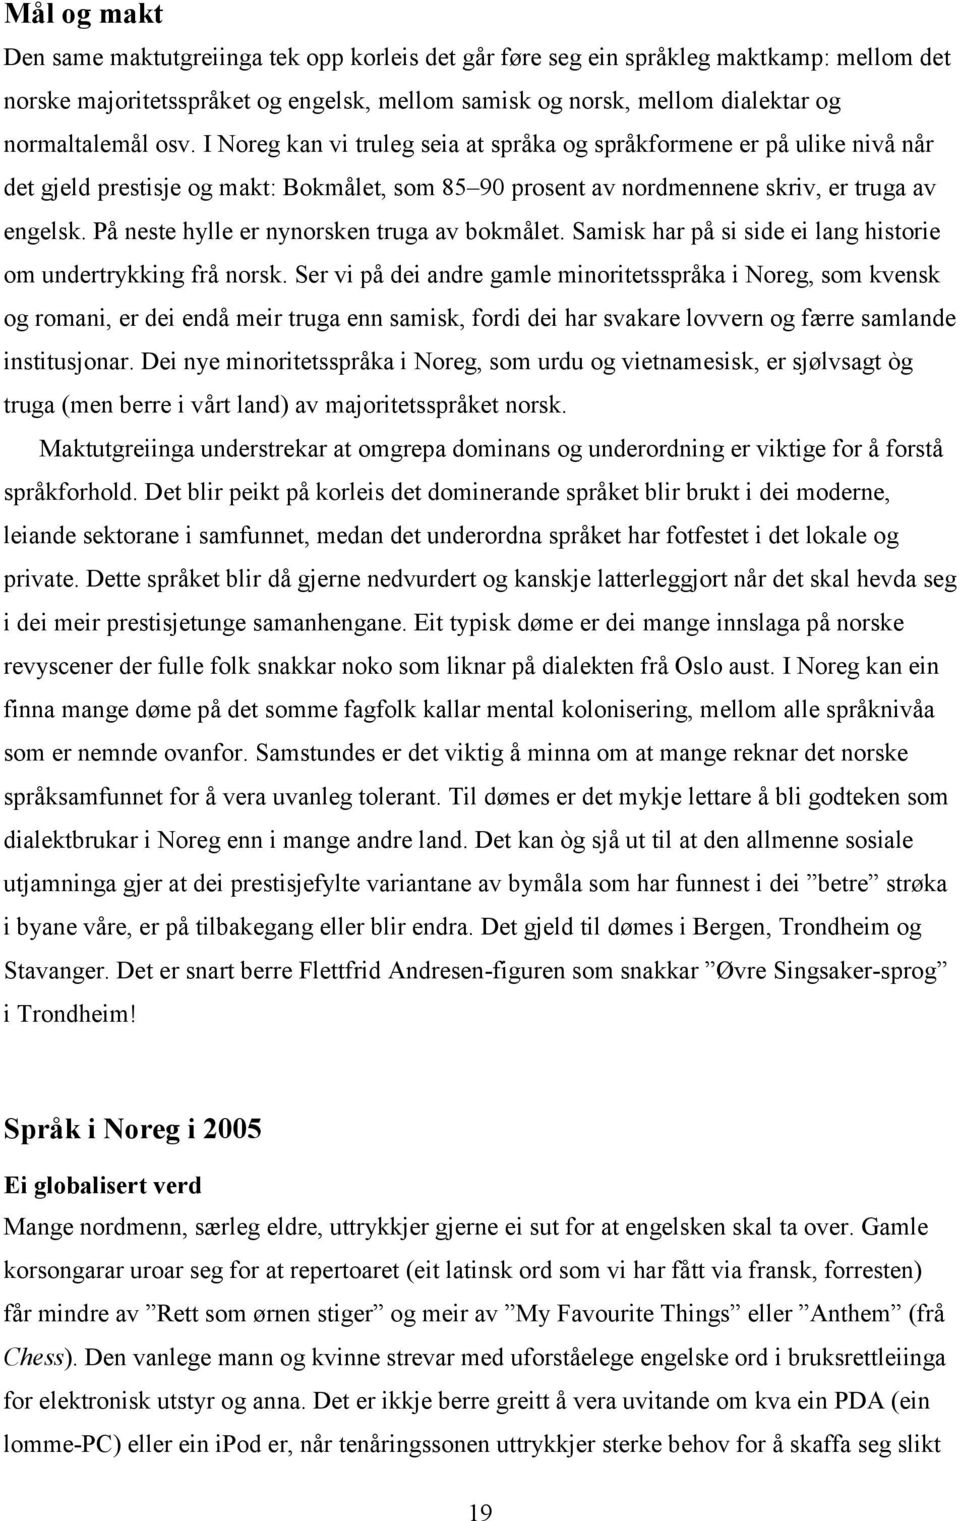 På neste hylle er nynorsken truga av bokmålet. Samisk har på si side ei lang historie om undertrykking frå norsk.